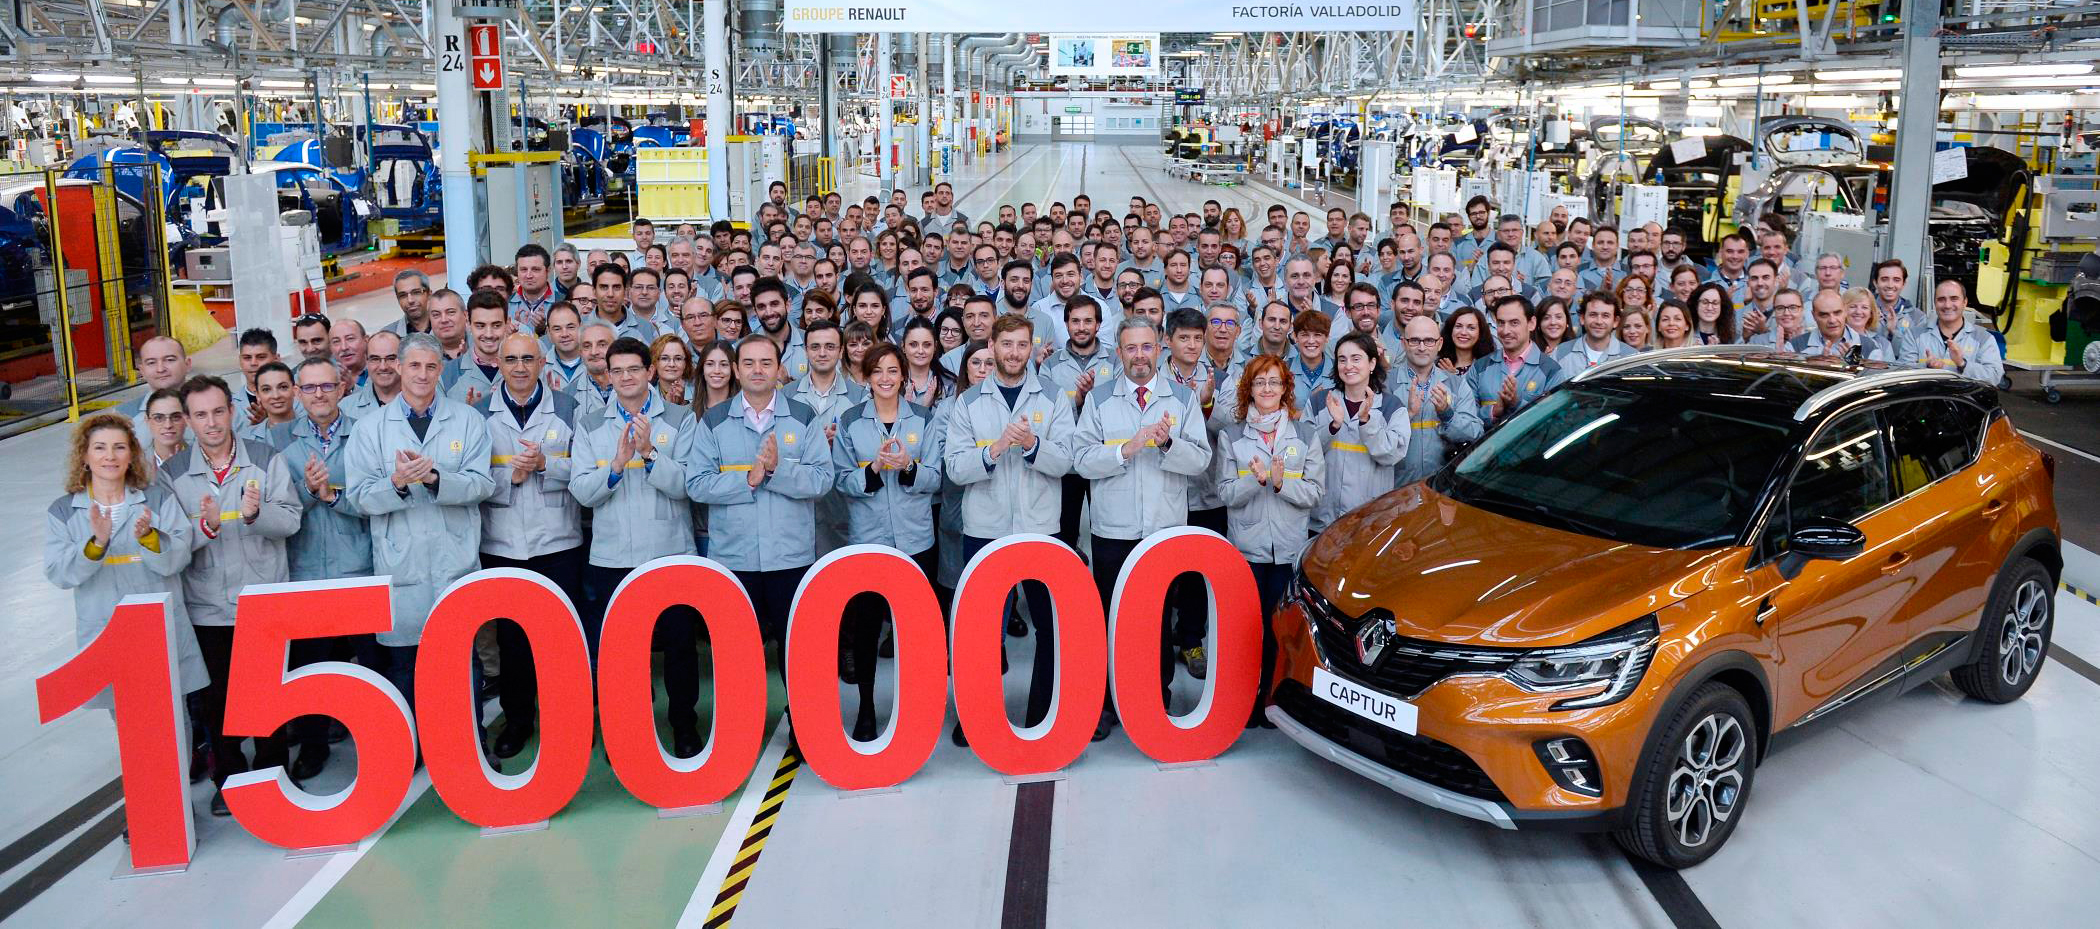 Renault Captur 6 años y 1.500.000 de uds. fabricadas en Valladolid